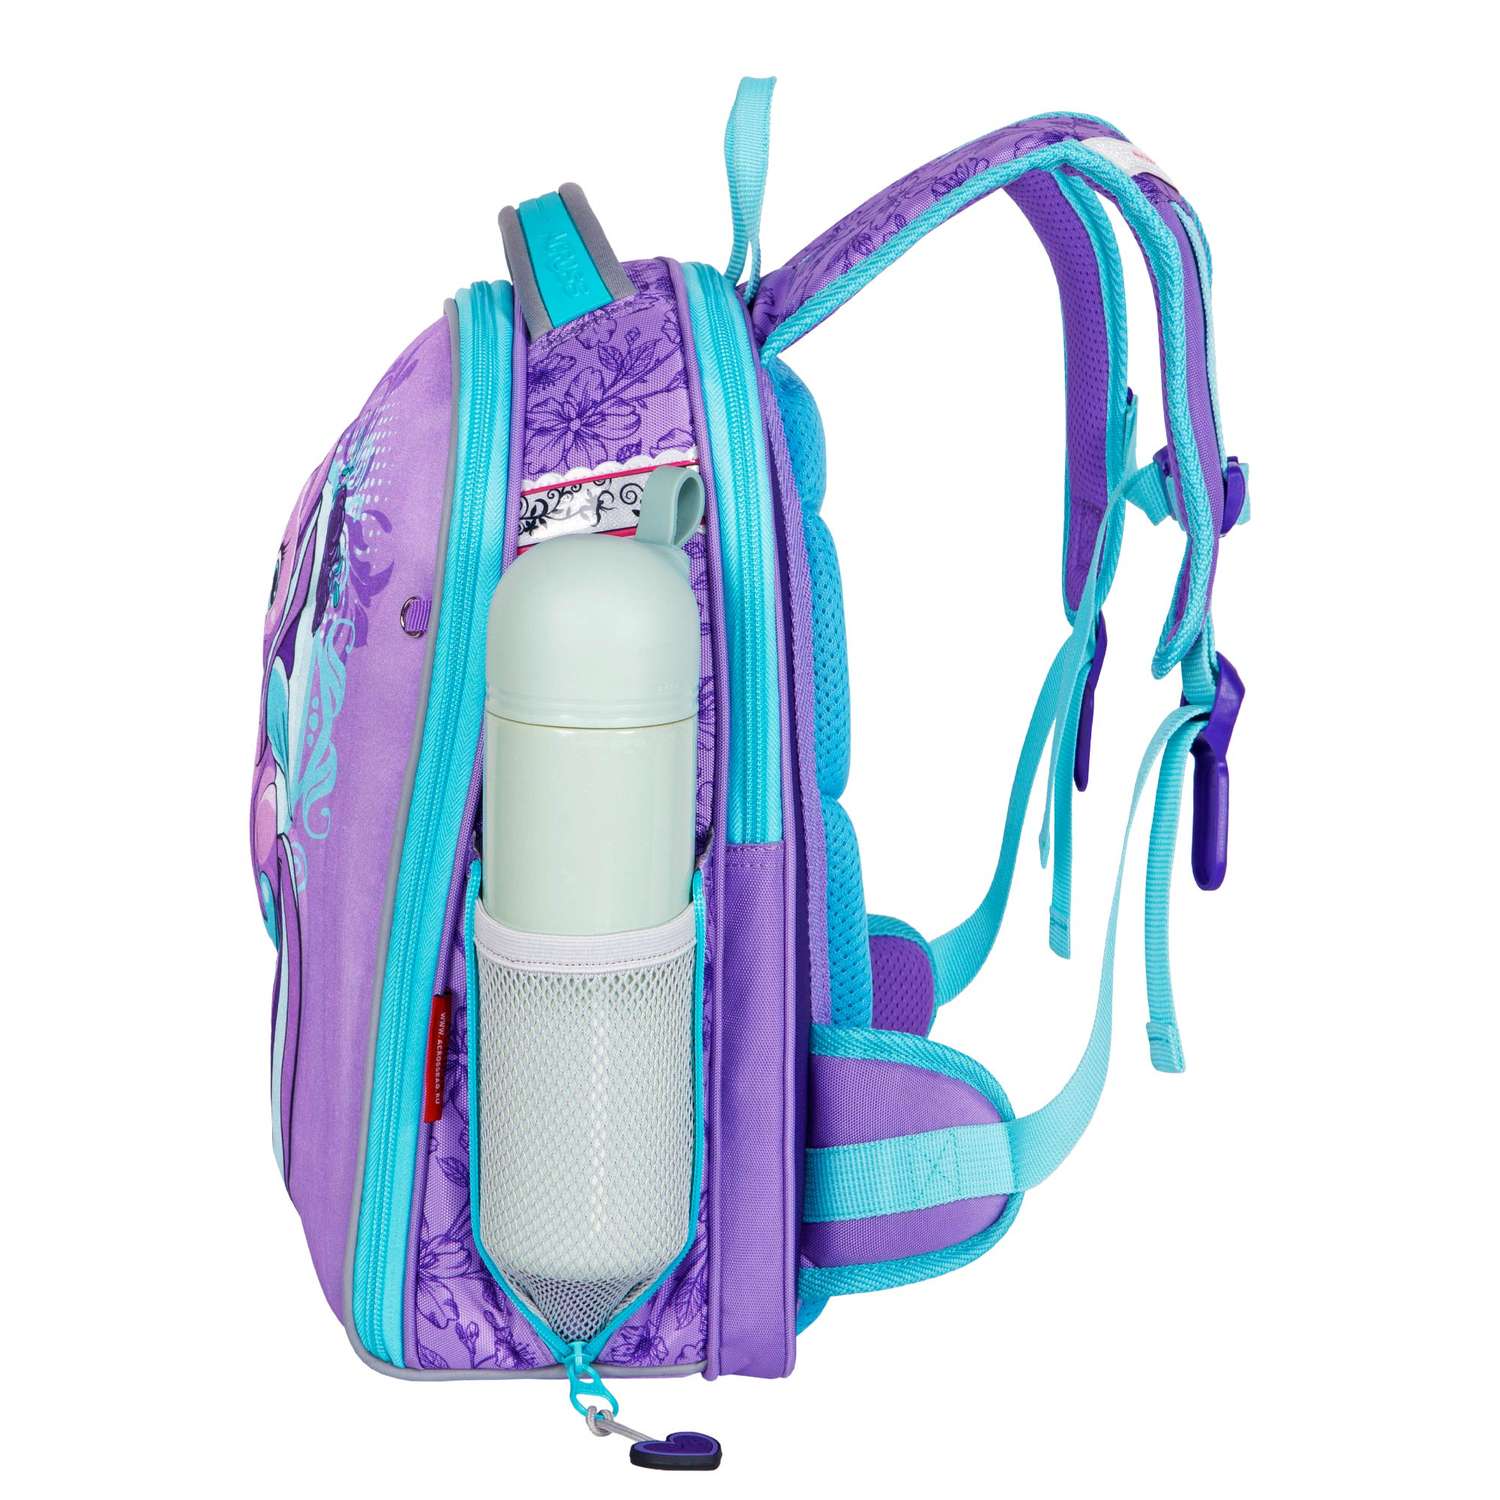 Рюкзак школьный ACROSS с наполнением: мешок для обуви пенал папка и брелок - фото 3